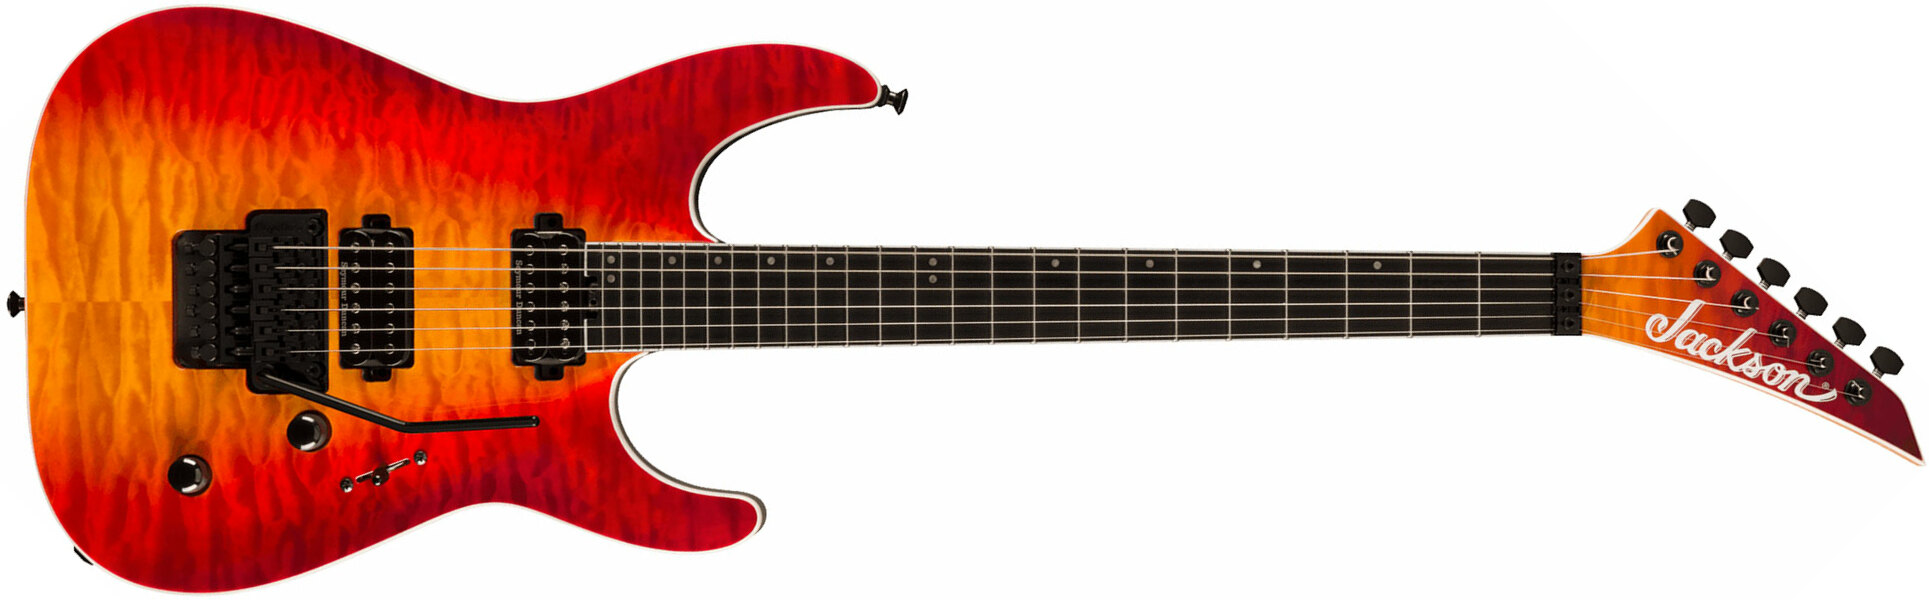 Jackson Dinky Dkaq Pro Plus 2h Seymour Duncan Fr Eb - Firestorm - Str shape electric guitar - Main picture